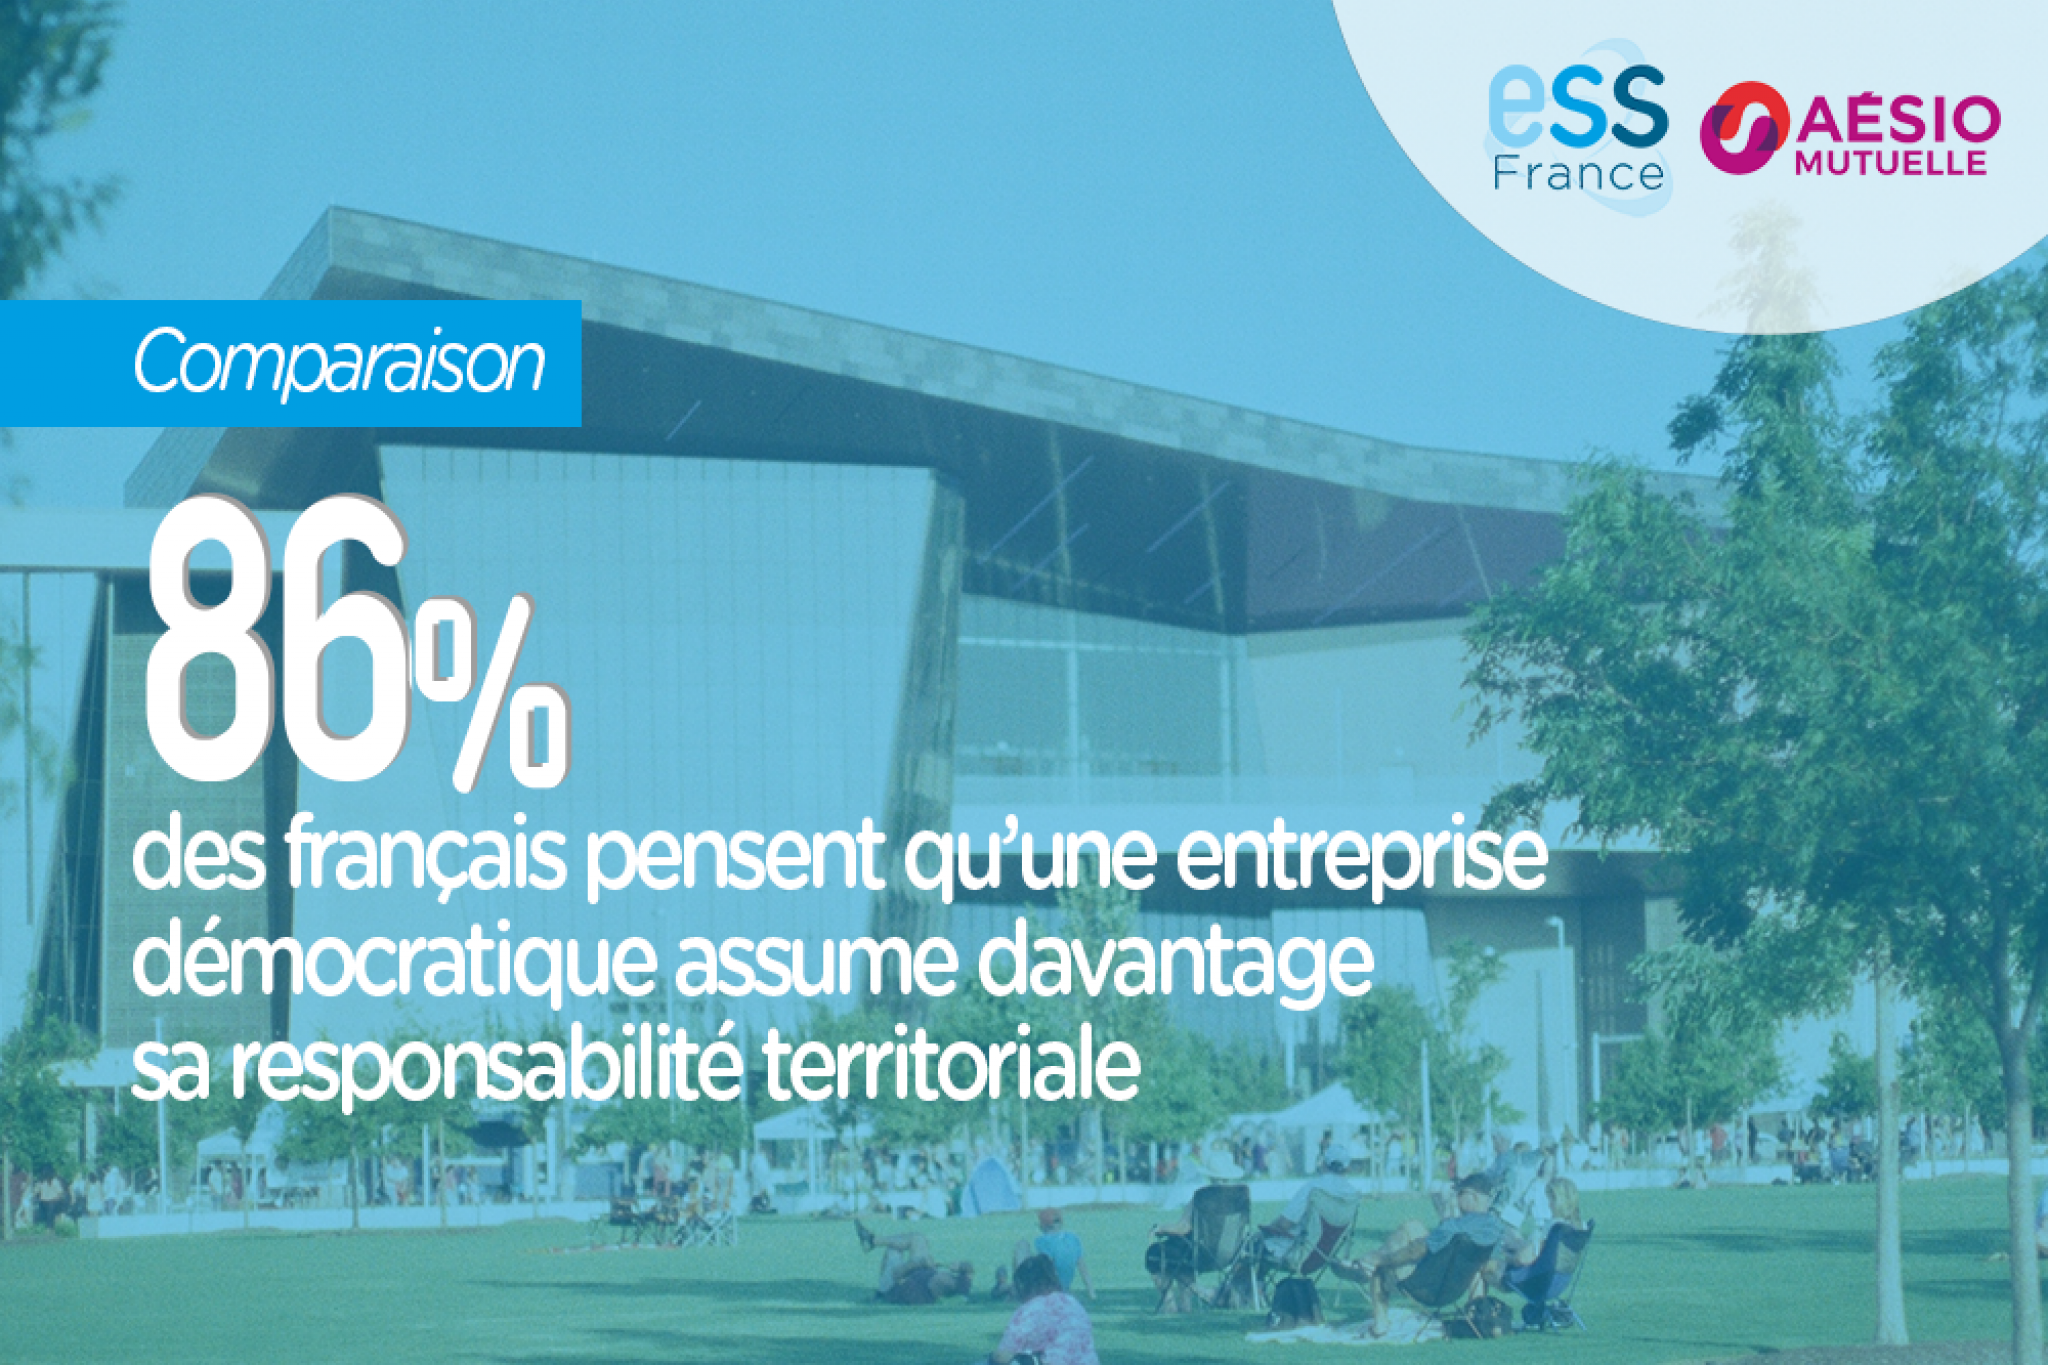 86% des français pensent qu'une entreprise démocratique assume davantage sa responsabilité territoriale